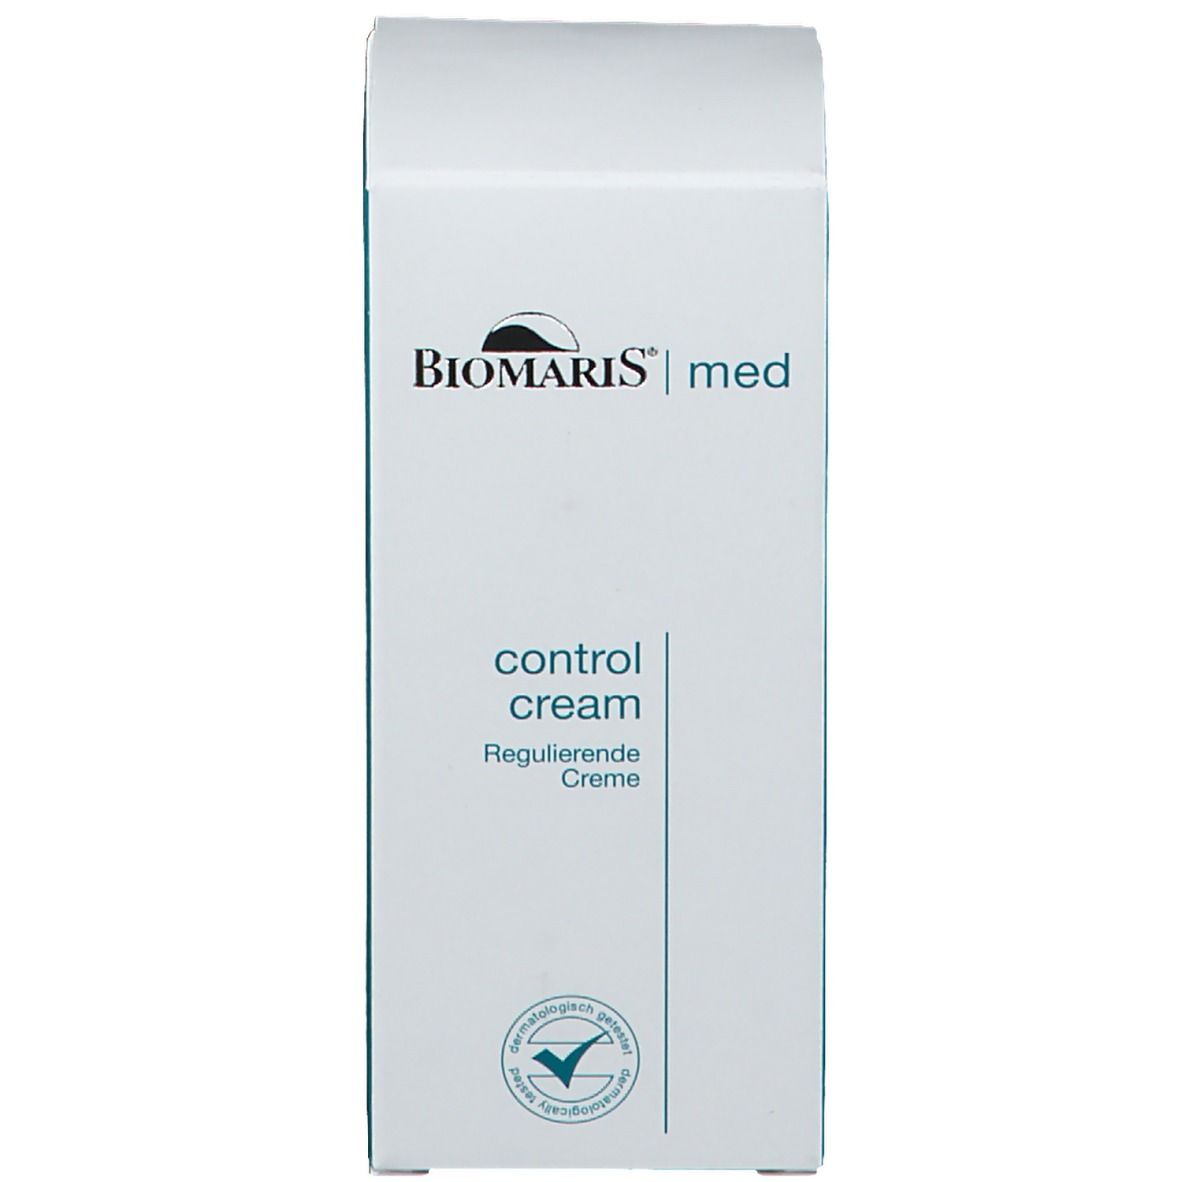 BIOMARIS® control cream med